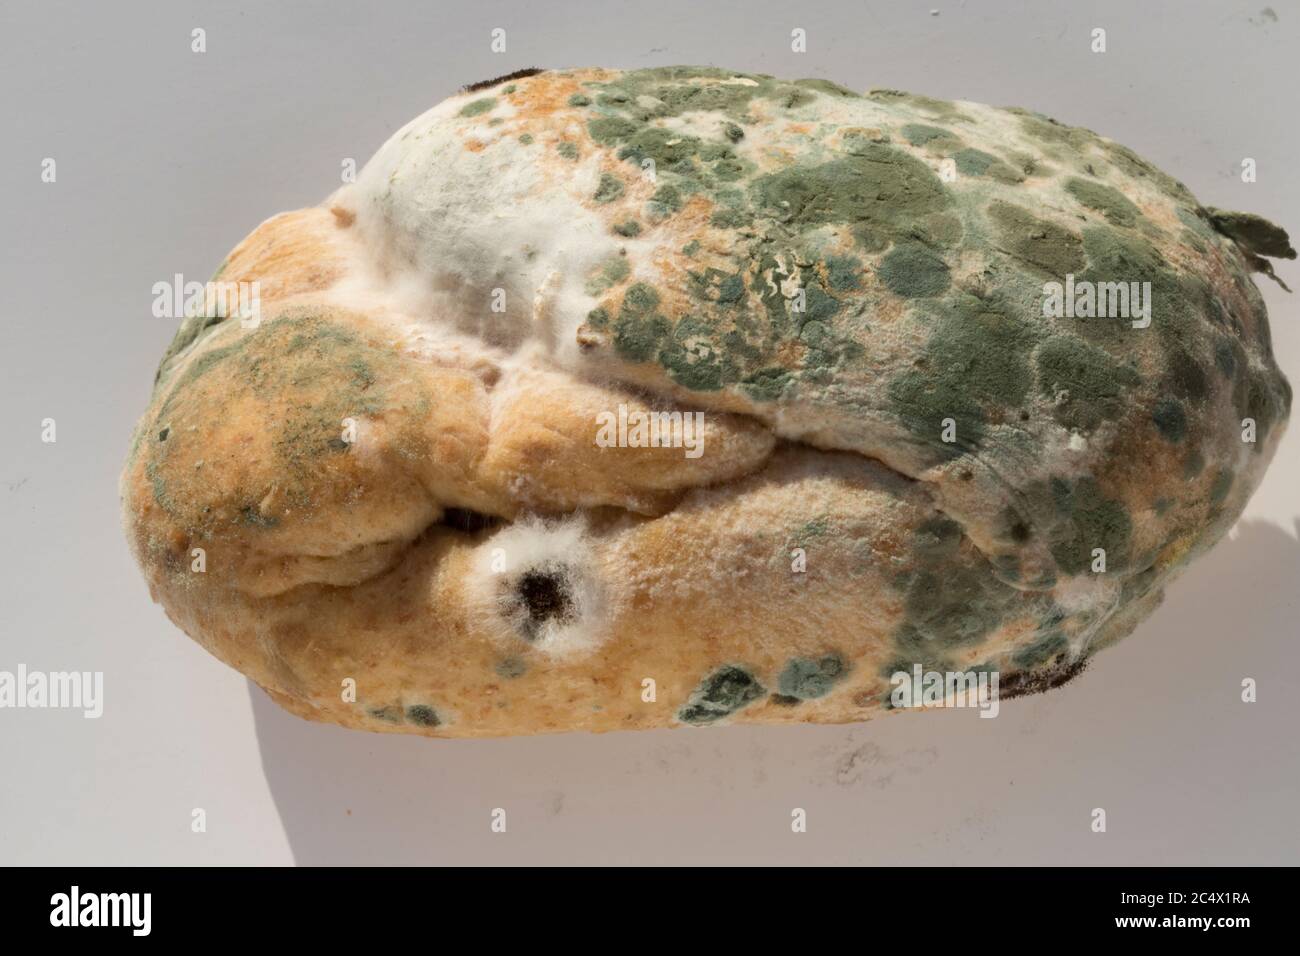 Moule vert et champignon blanc poussant sur vieux pain Royaume-Uni Banque D'Images